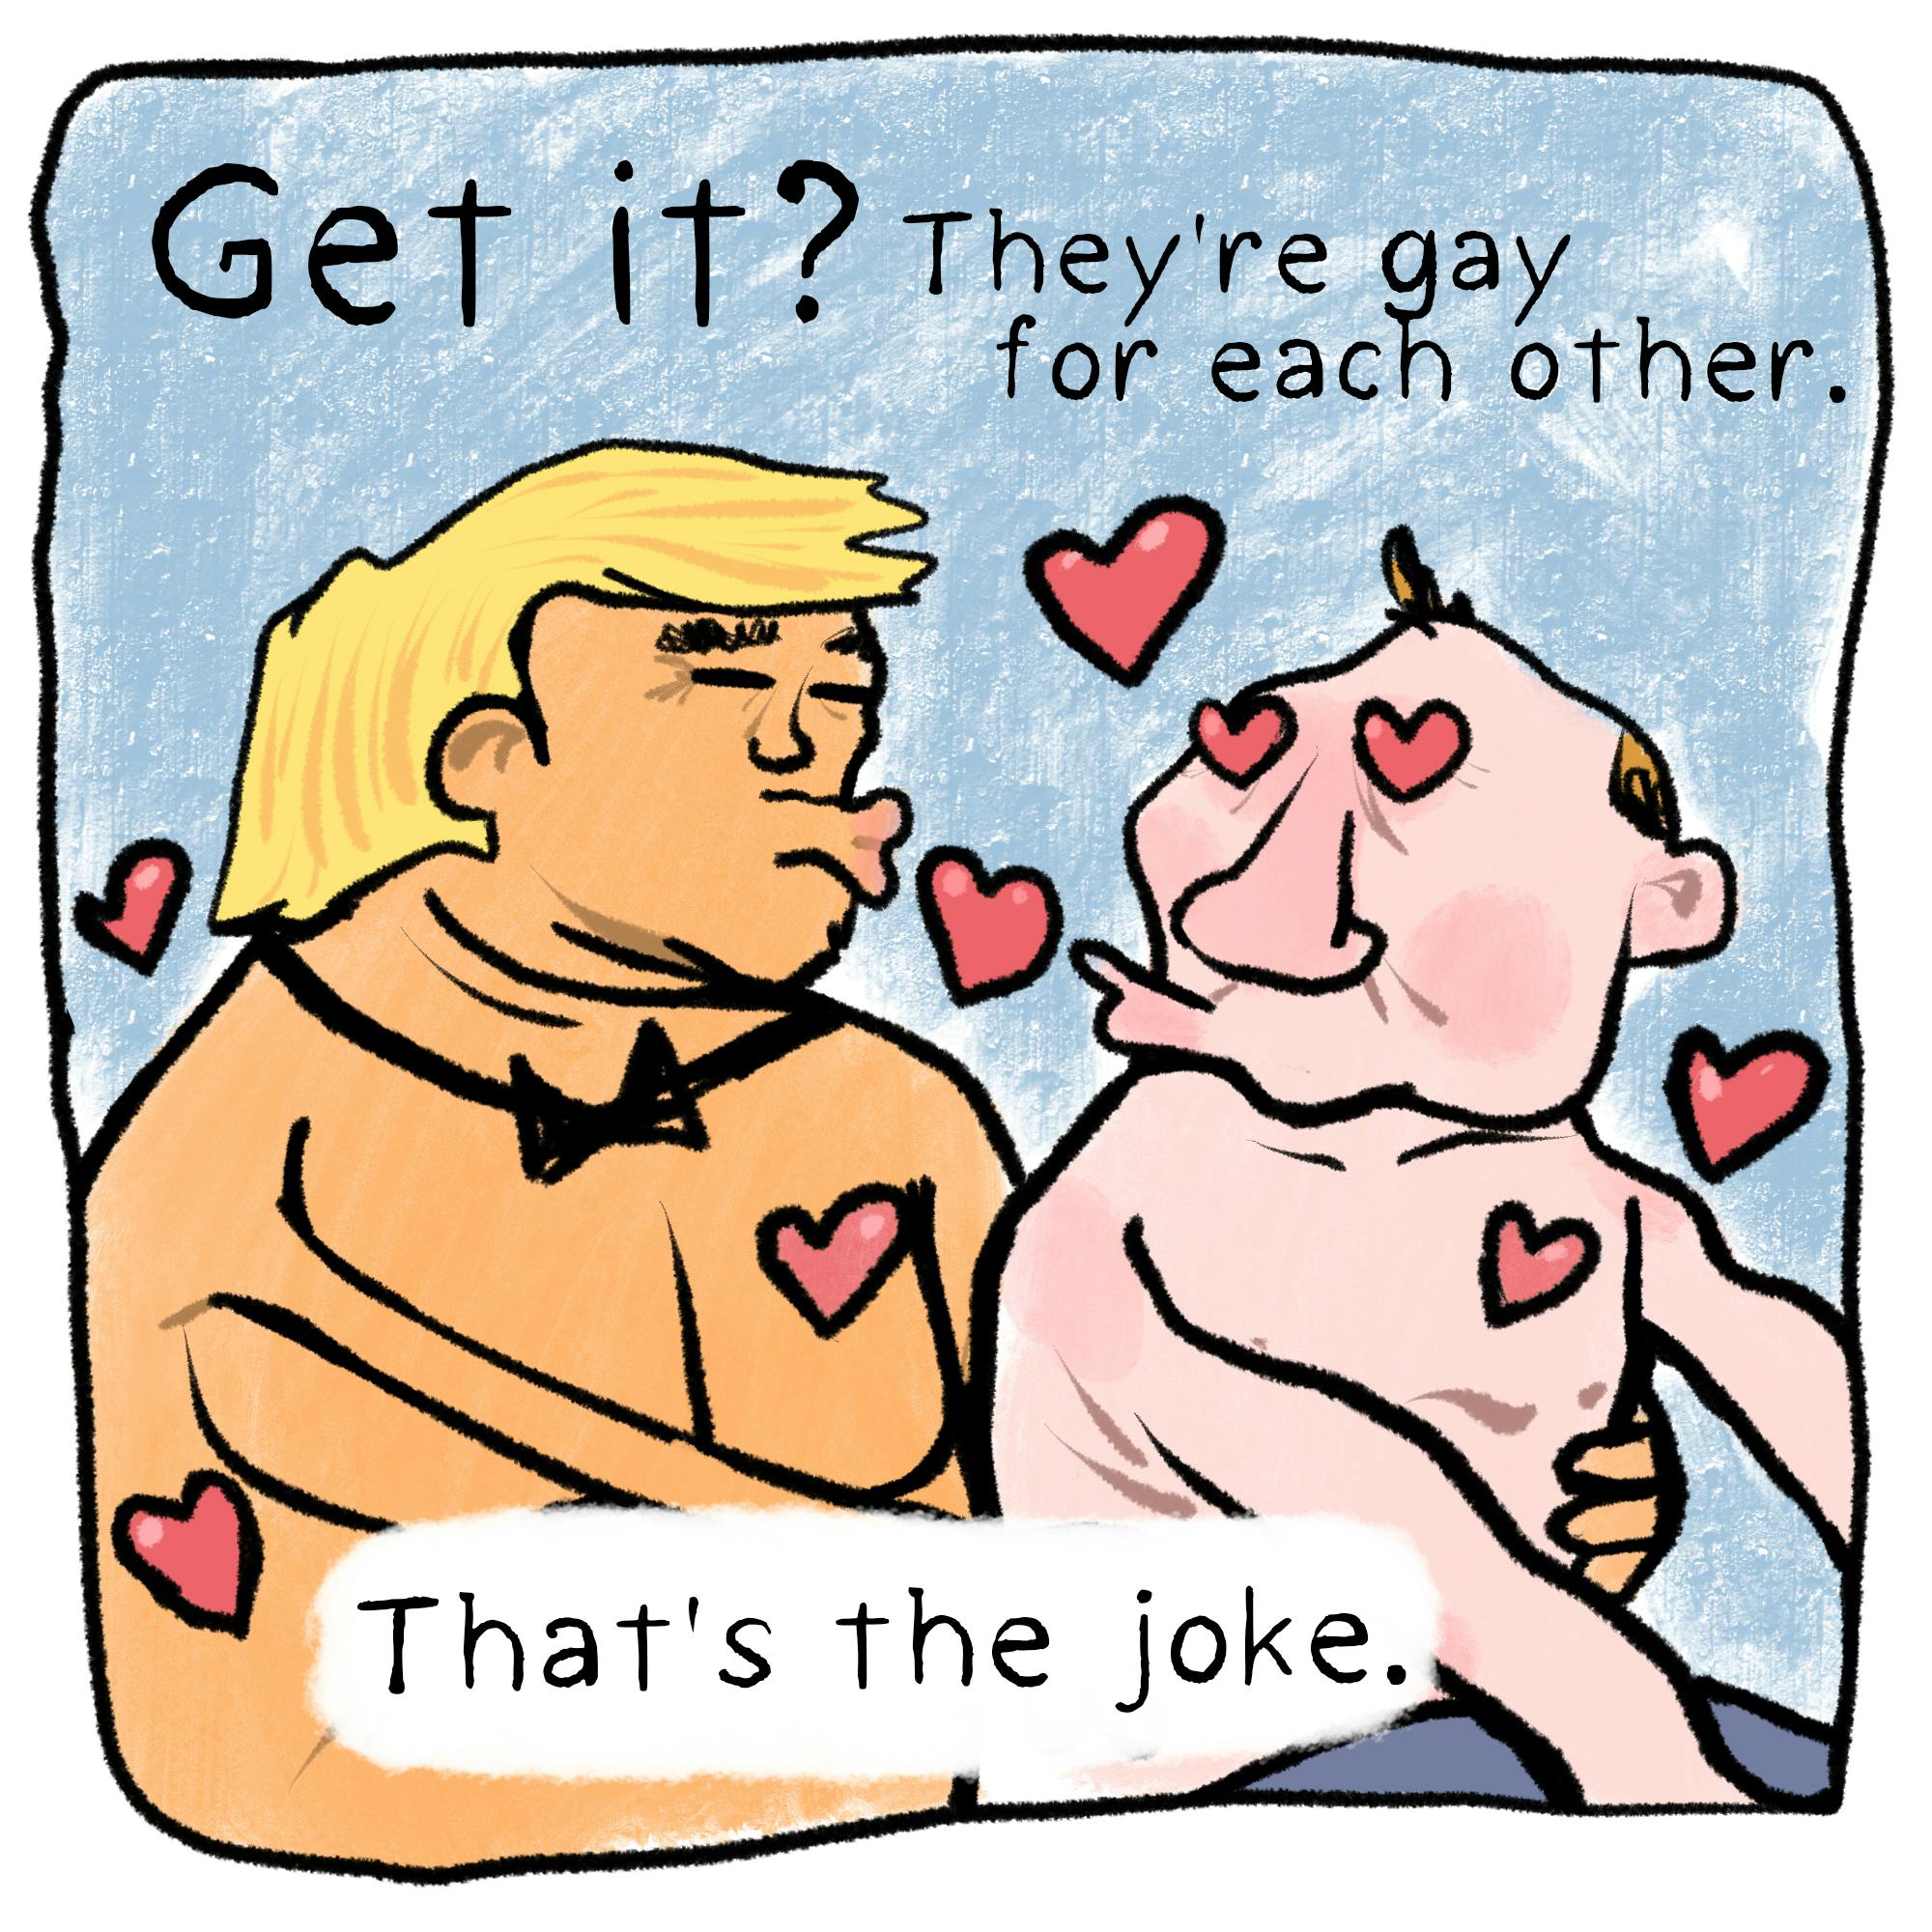 trump-putin-gay-jokes-002-793.jpeg